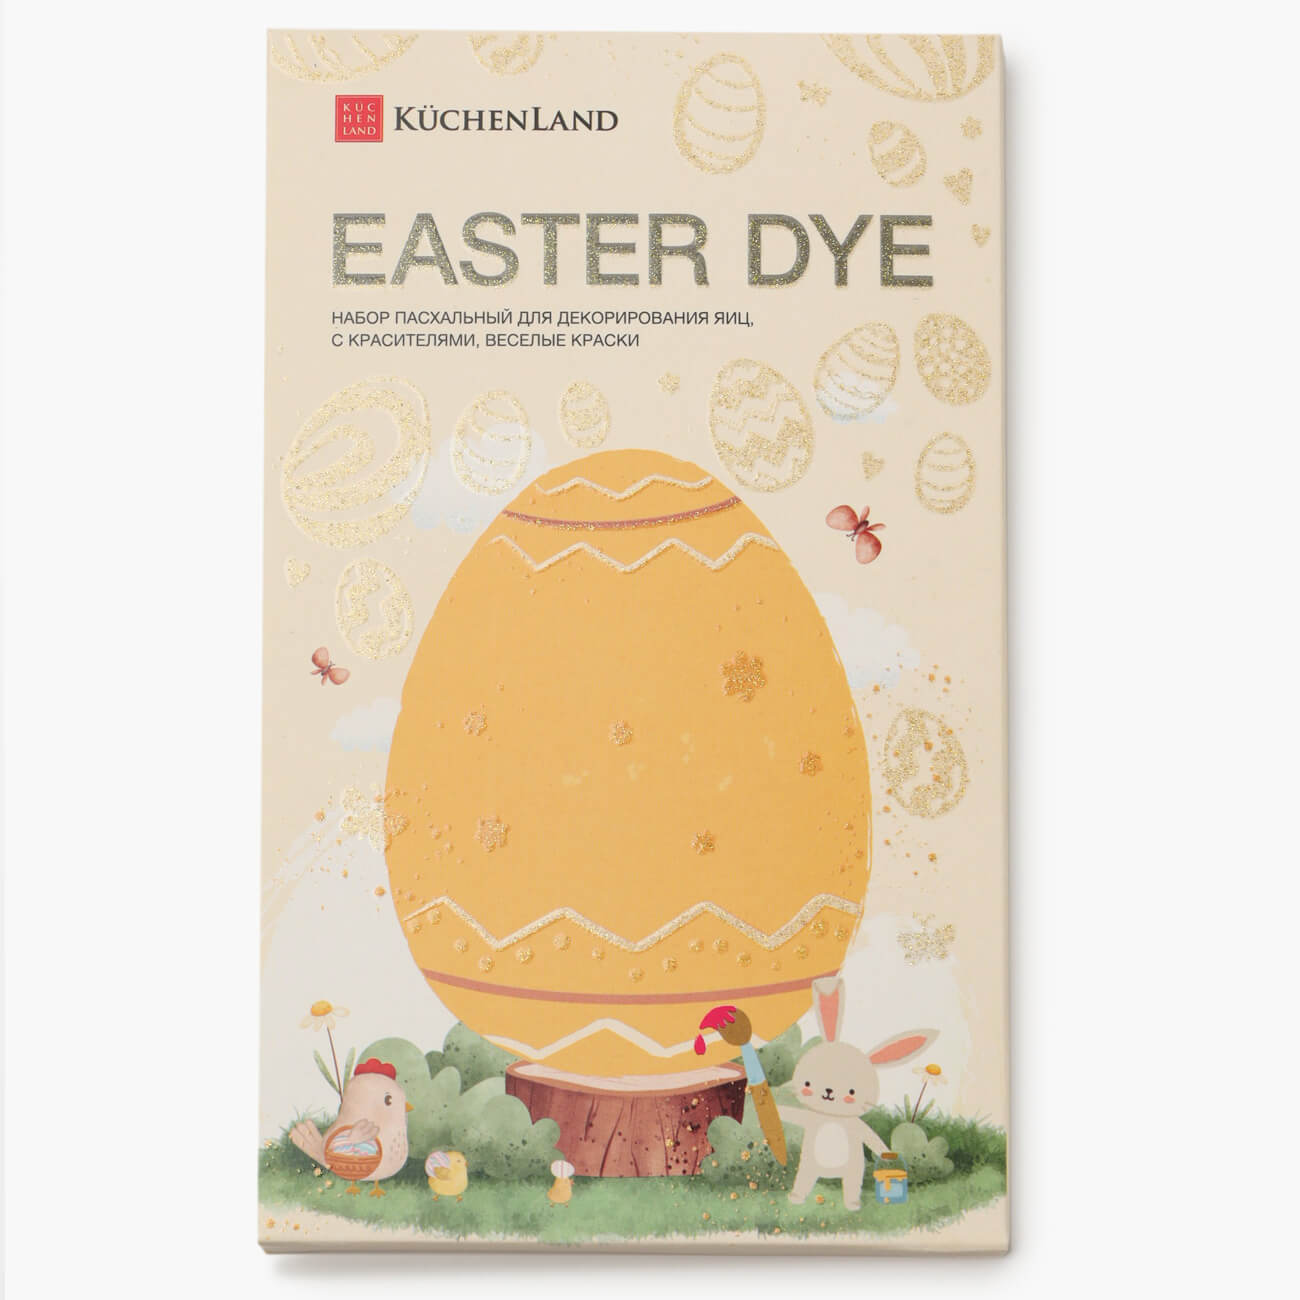 Набор пасхальный для декорирования яиц, 7 цветов/13 пр, Веселые краски, Easter dye веселые липучки